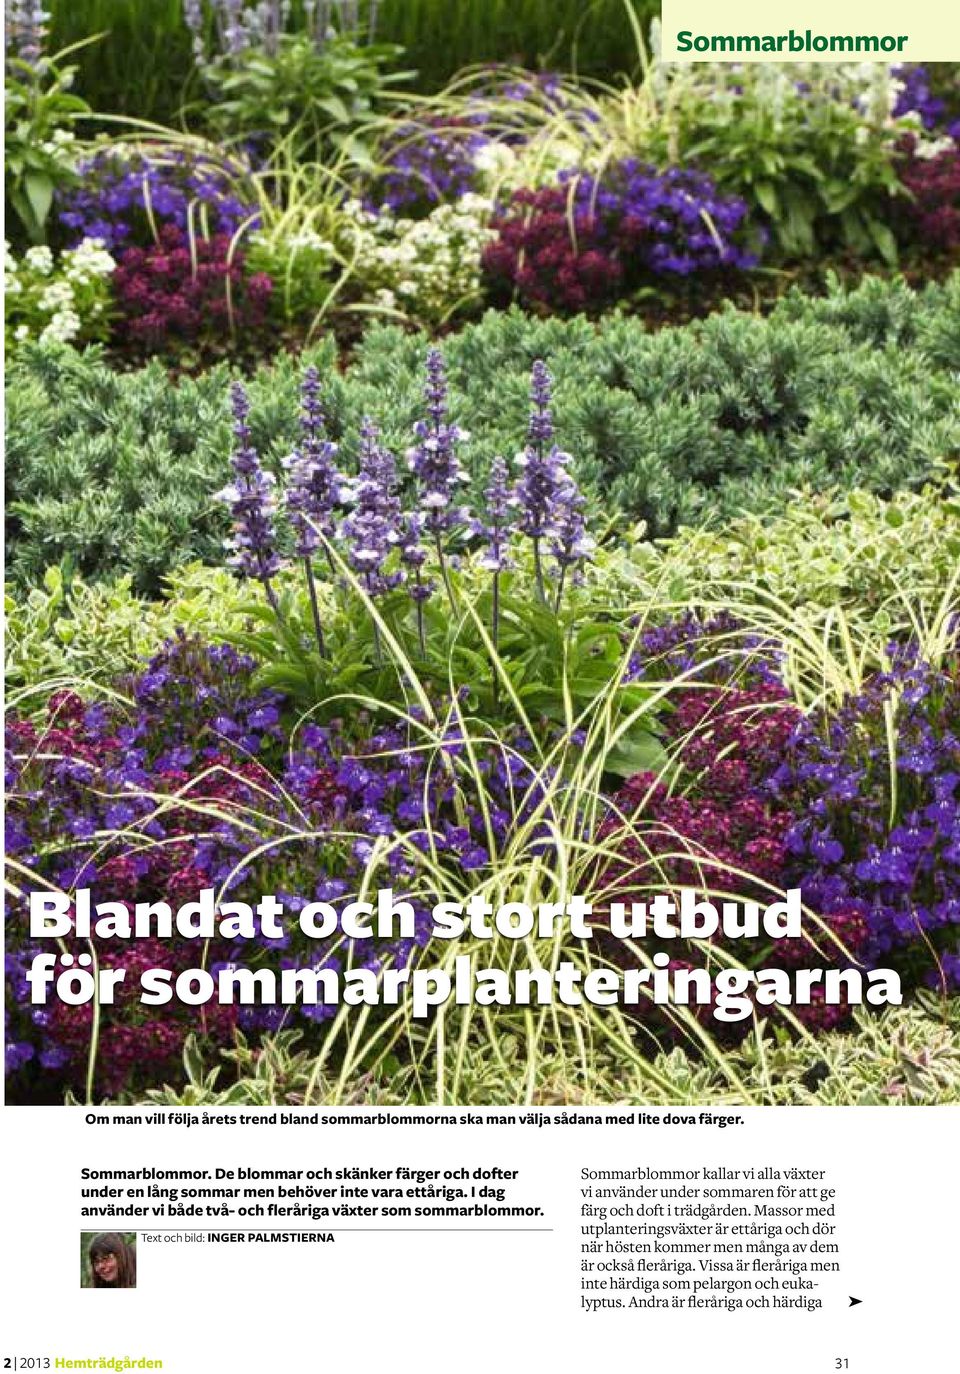 Text och bild: Inger Palmstierna Sommarblommor kallar vi alla växter vi använder under sommaren för att ge färg och doft i trädgården.